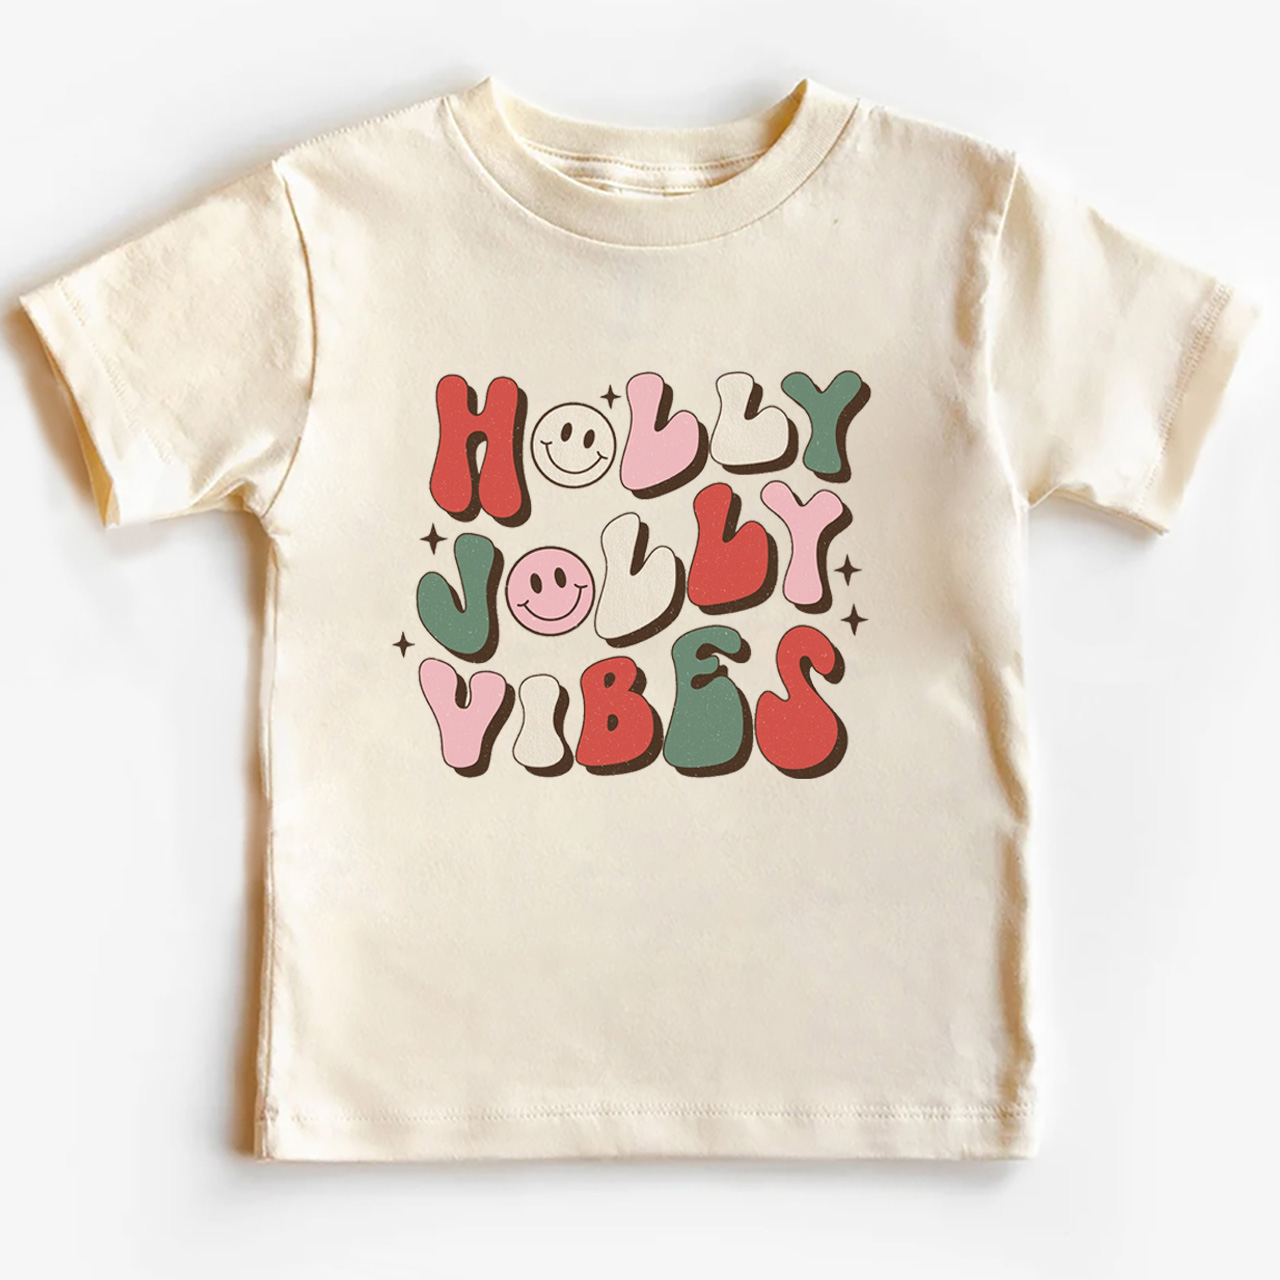 Cute Natural Holly Jolly Vibes Kids Shirt 